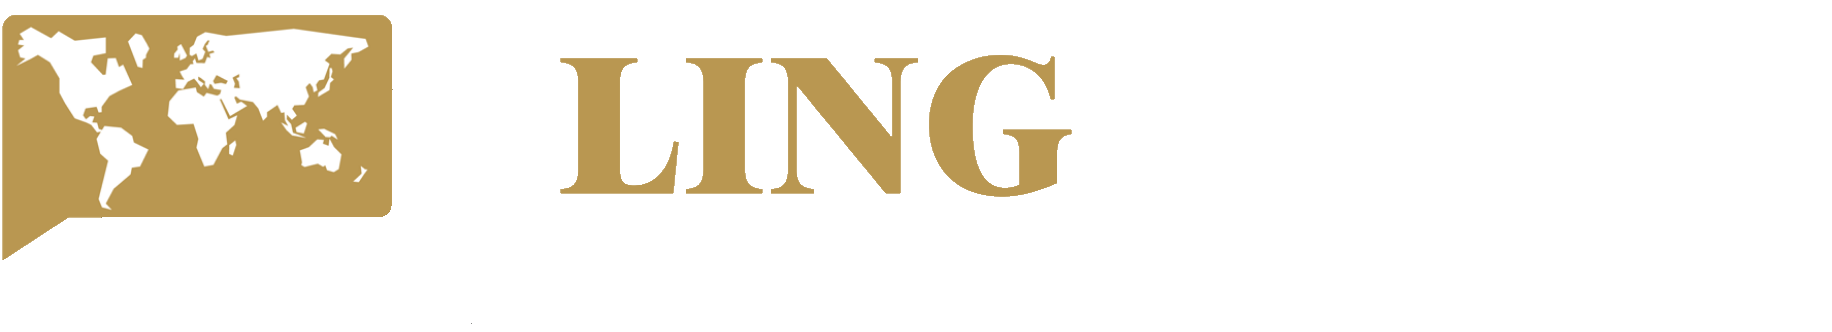 LOGO-Ling-Partner-Biale